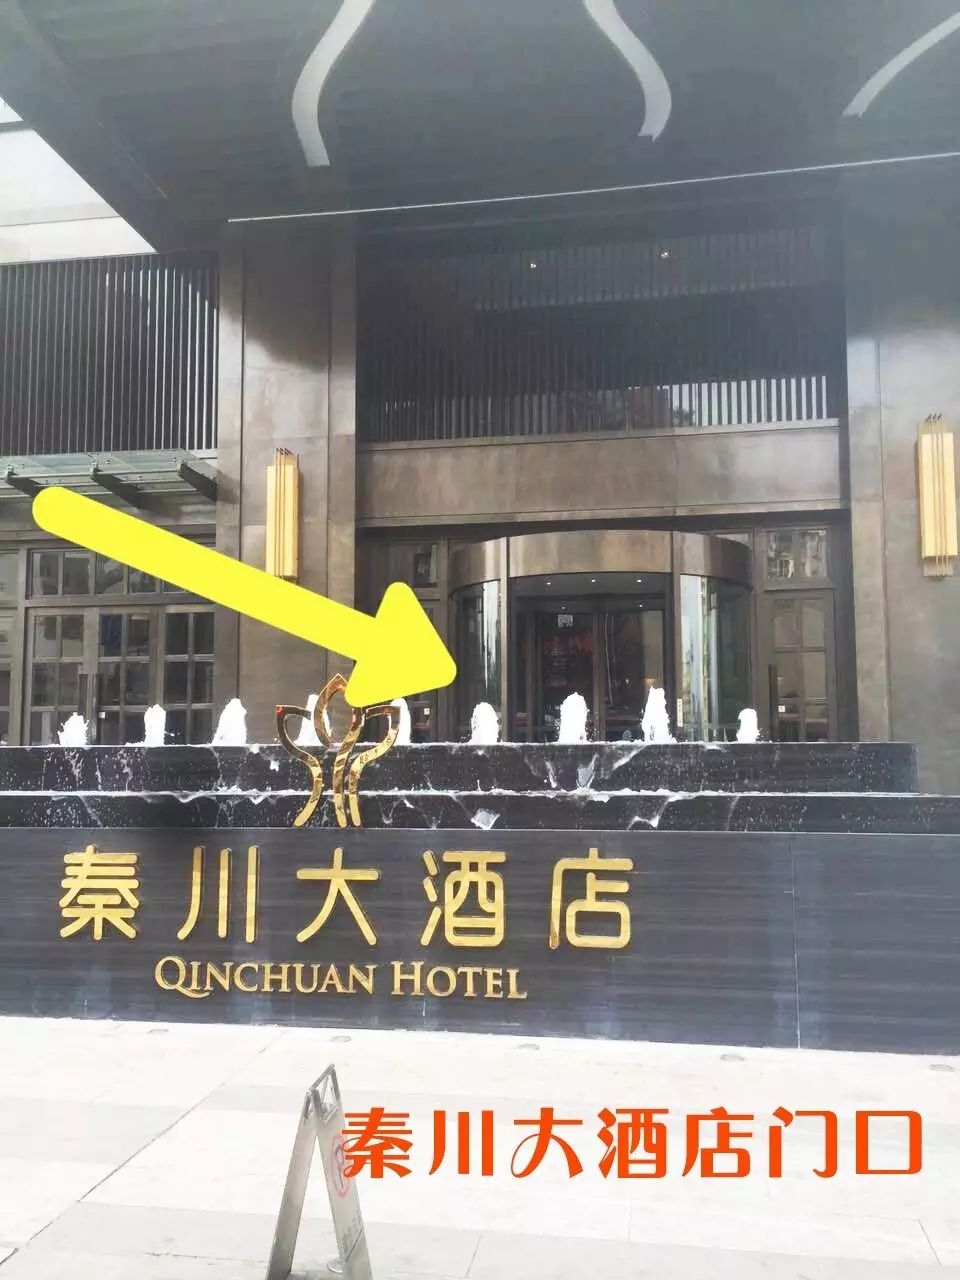 巴中秦川大酒店这里要被搬空了!